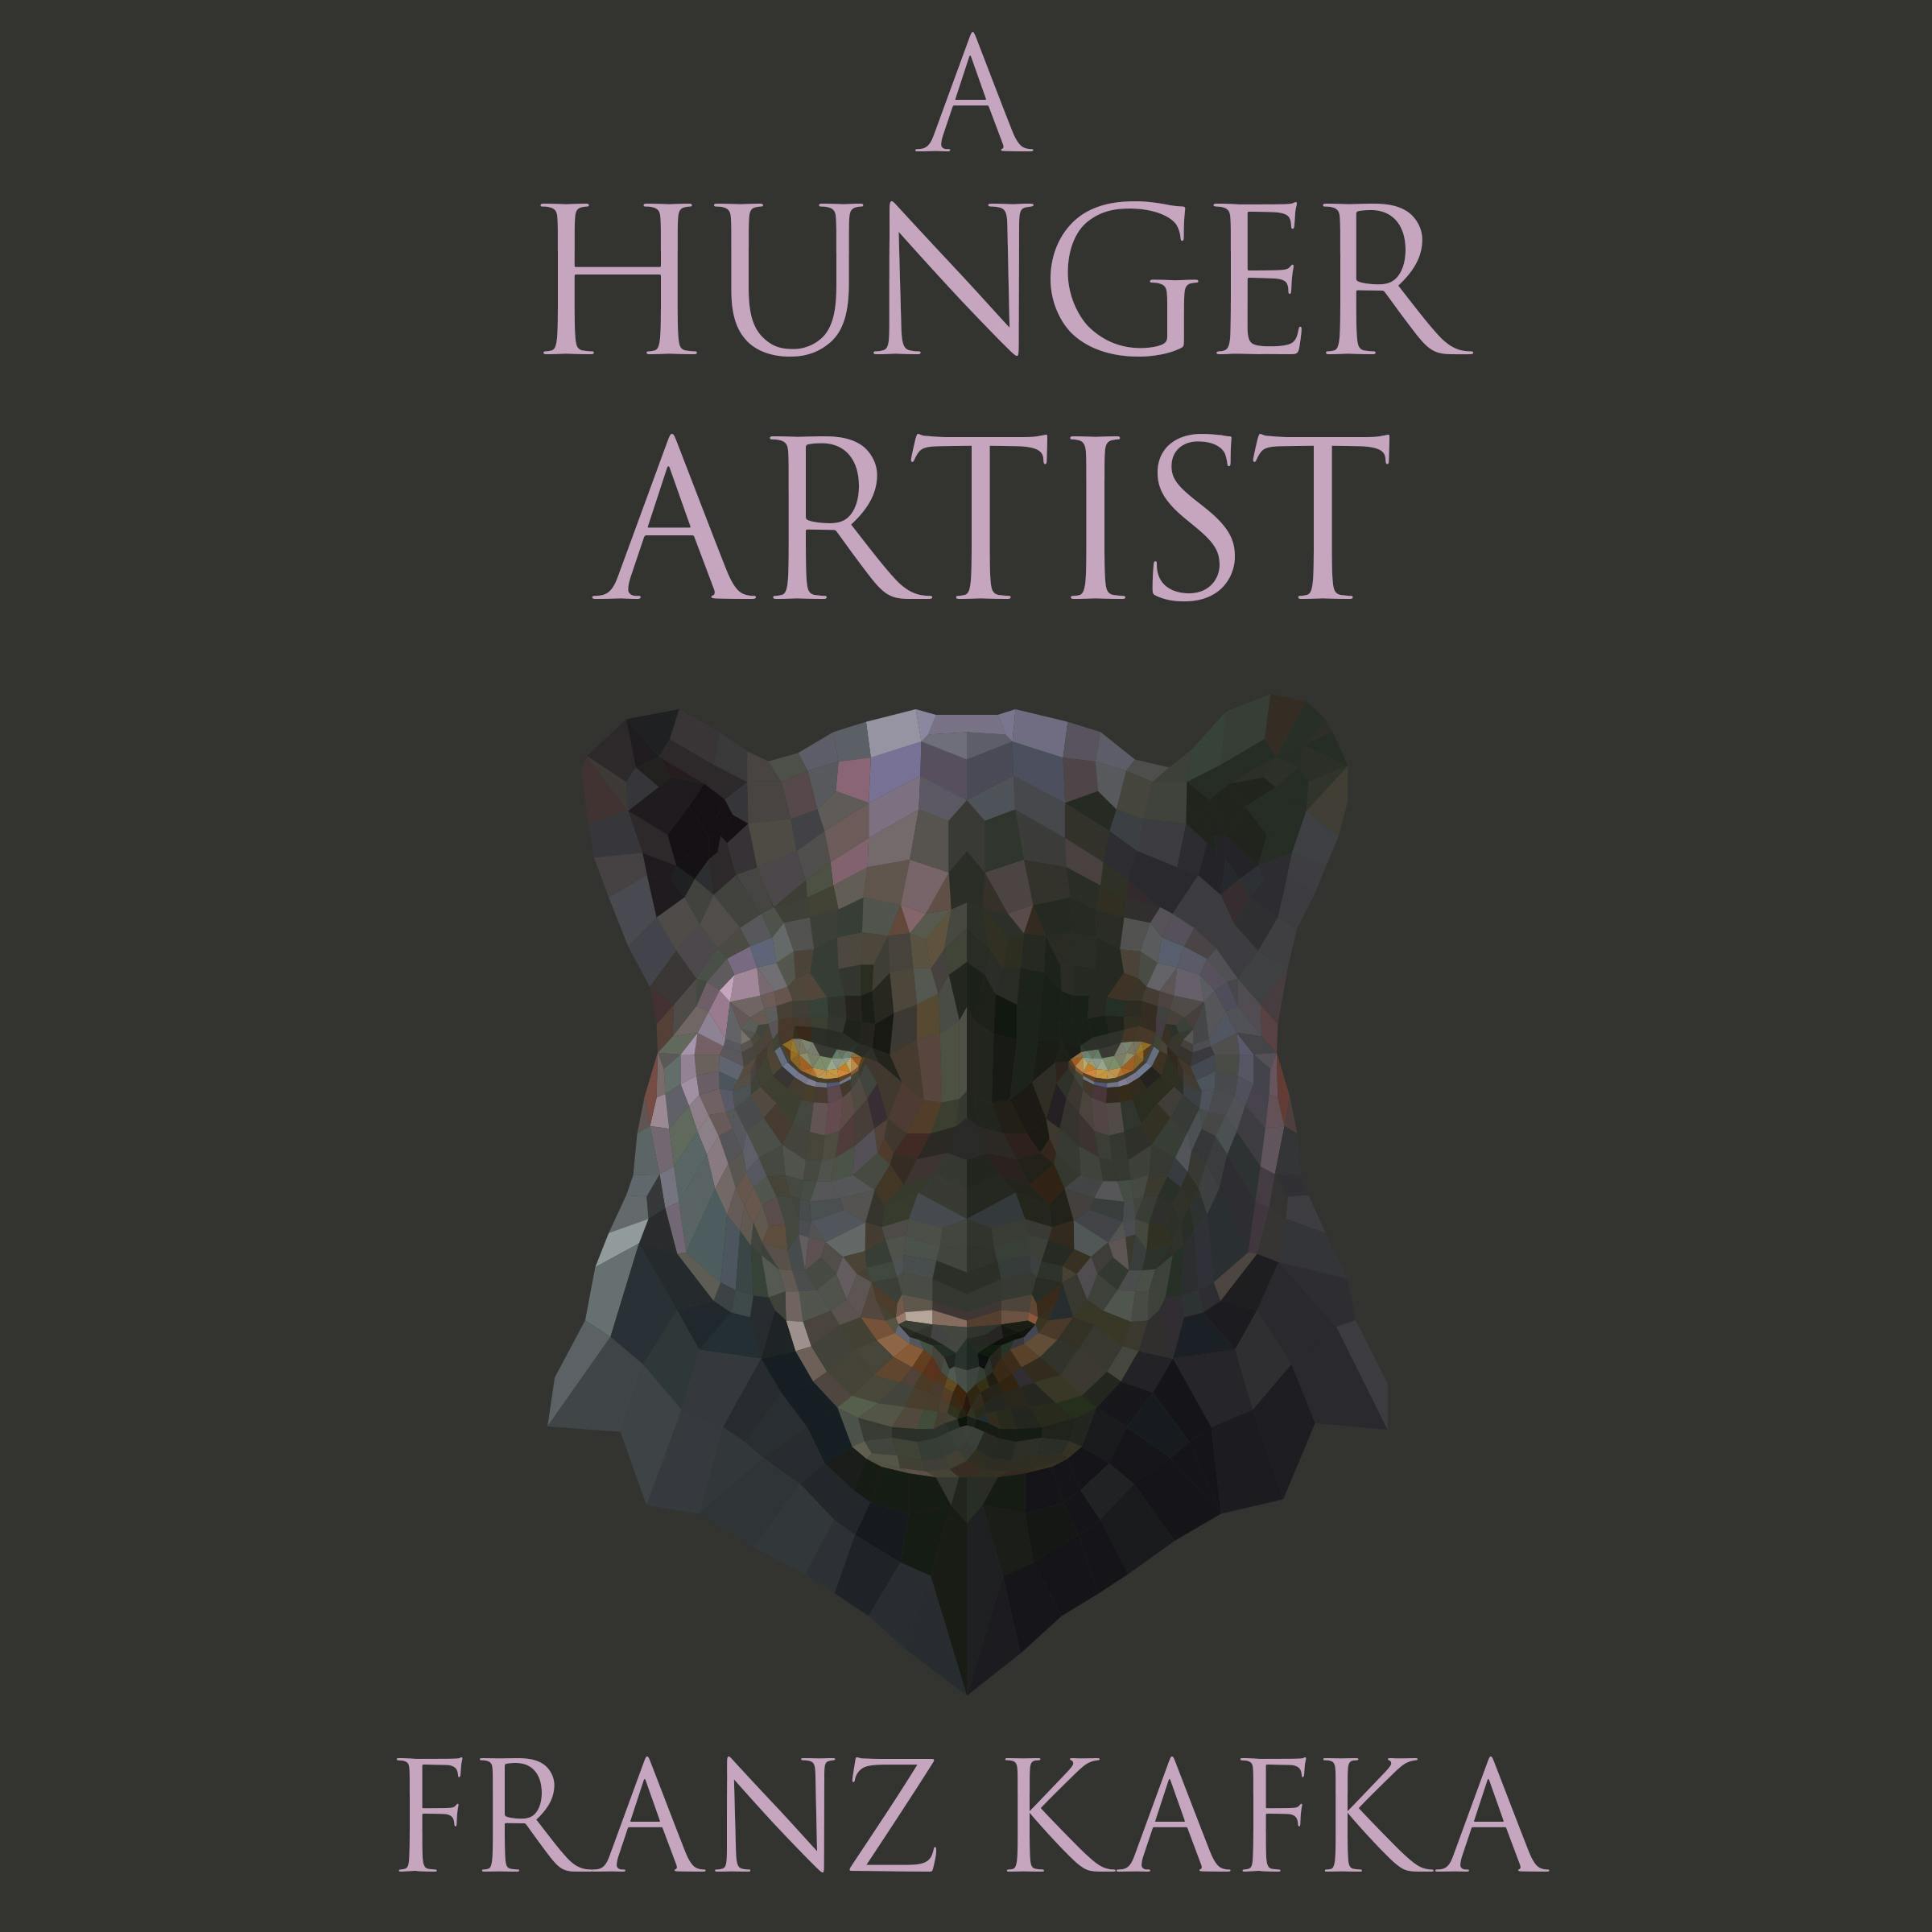 Plot - A Hunger Artist by Franz Kafka